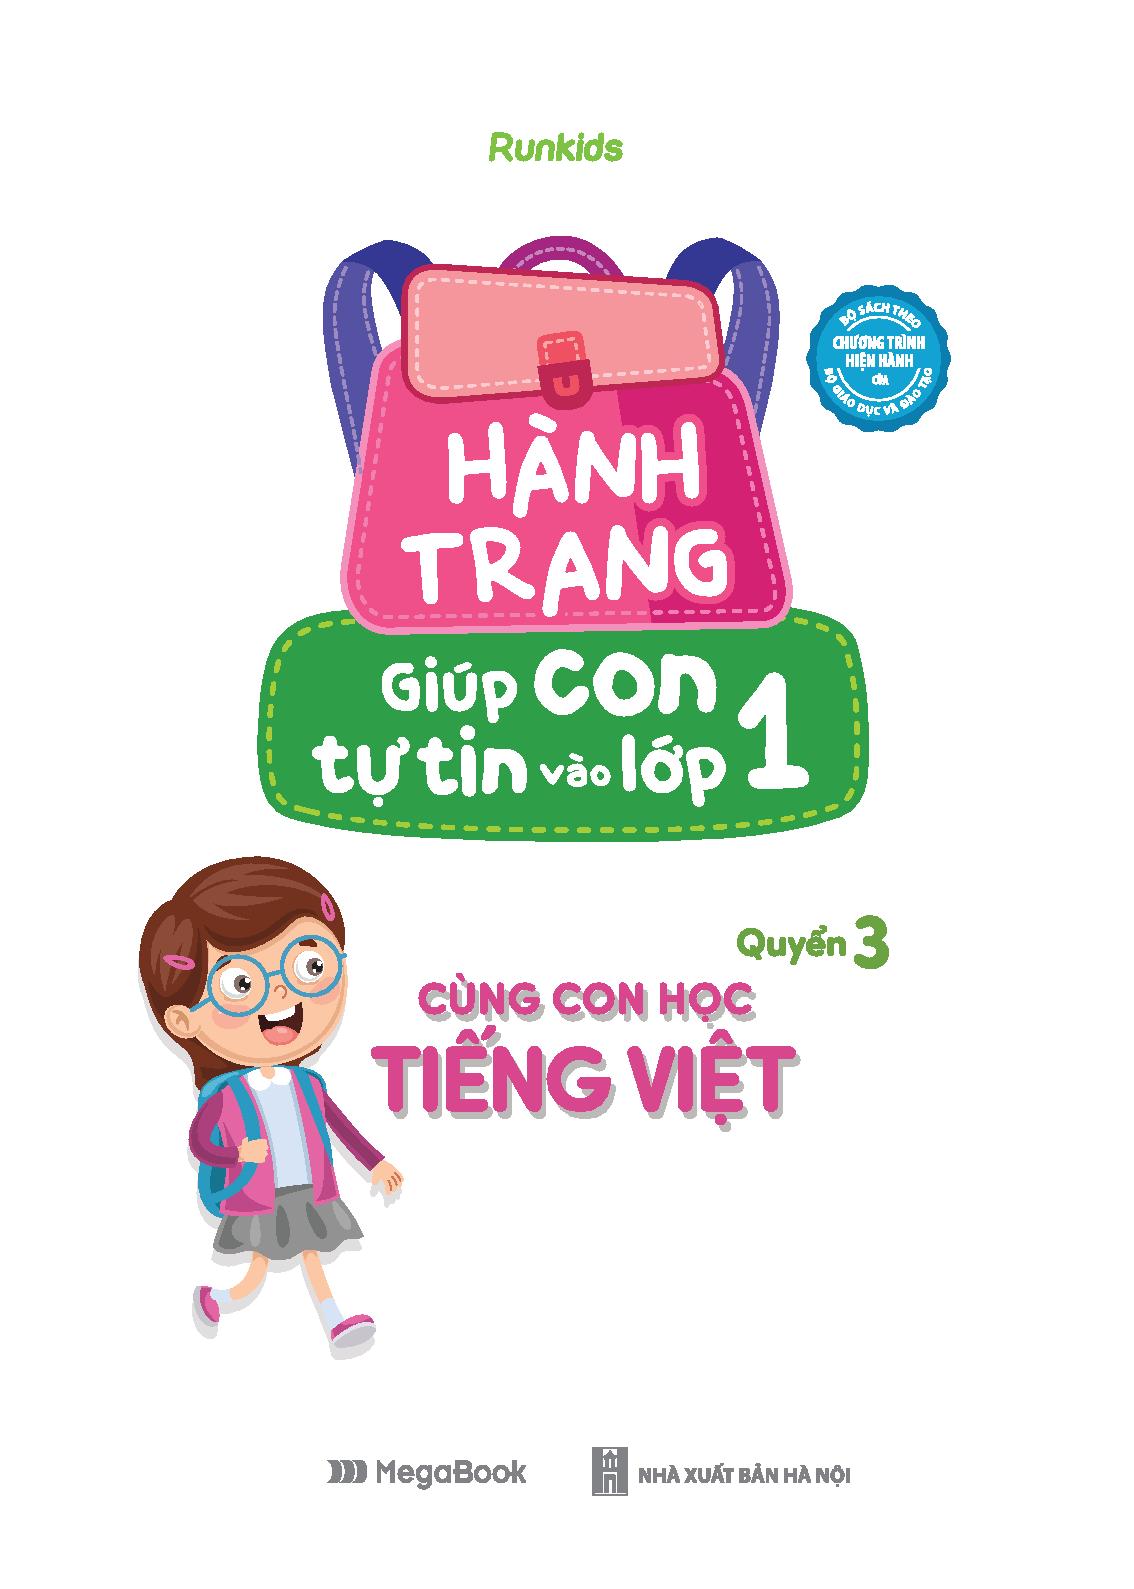 Fahasa - Hành Trang Giúp Con Tự Tin Vào Lớp 1 - Quyển 3: Cùng Con Học Tiếng Việt